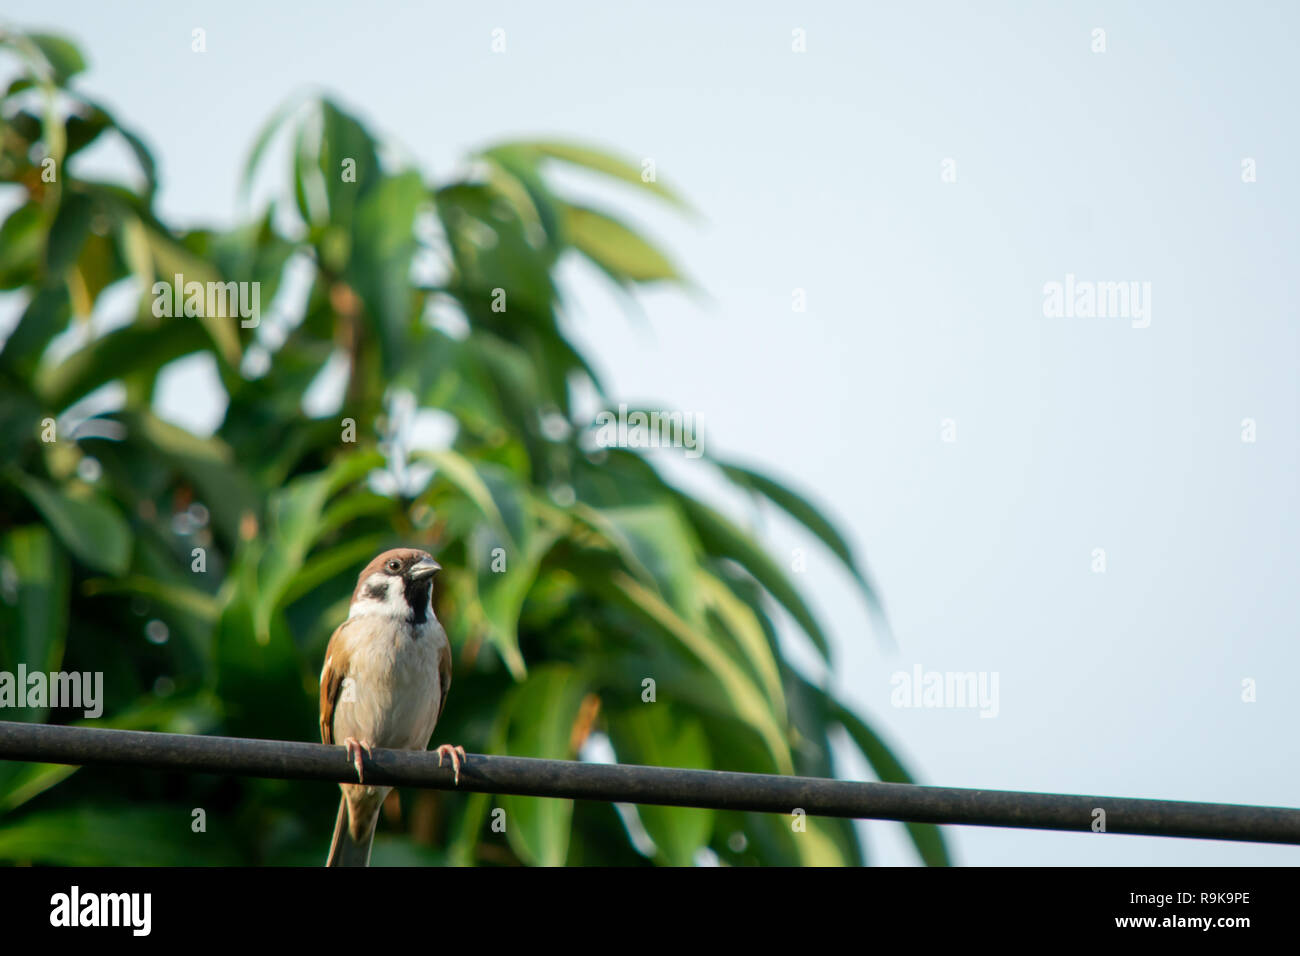 Gorrión pájaro sentado en el cable eléctrico en el fondo de hoja verde Foto de stock